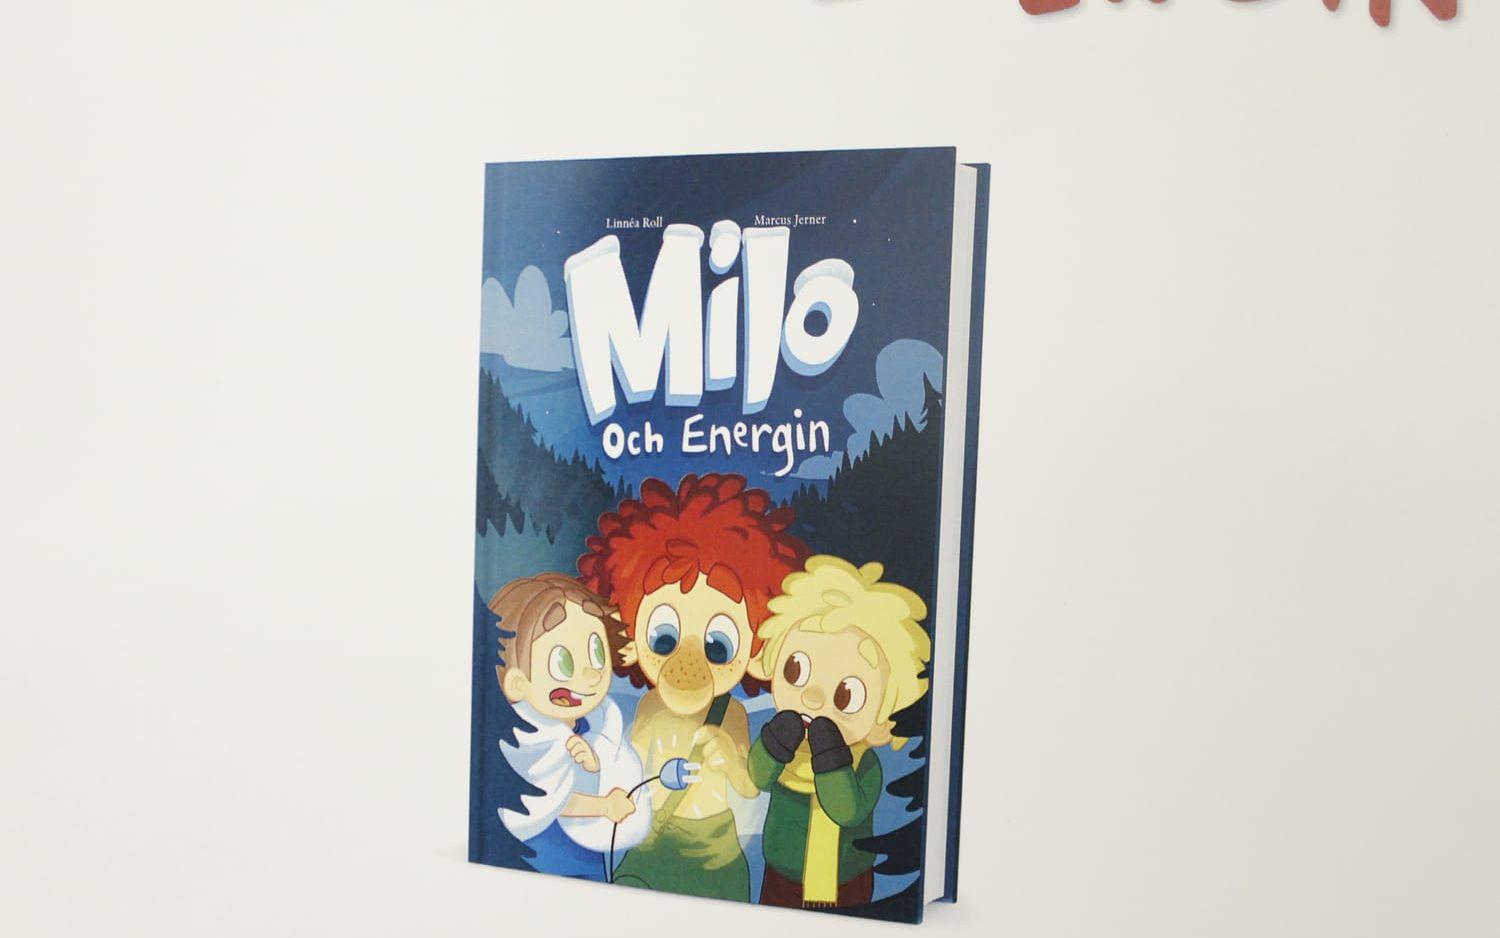 Ny. Den nya boken från Trollhättan Energi - Milo och Energin